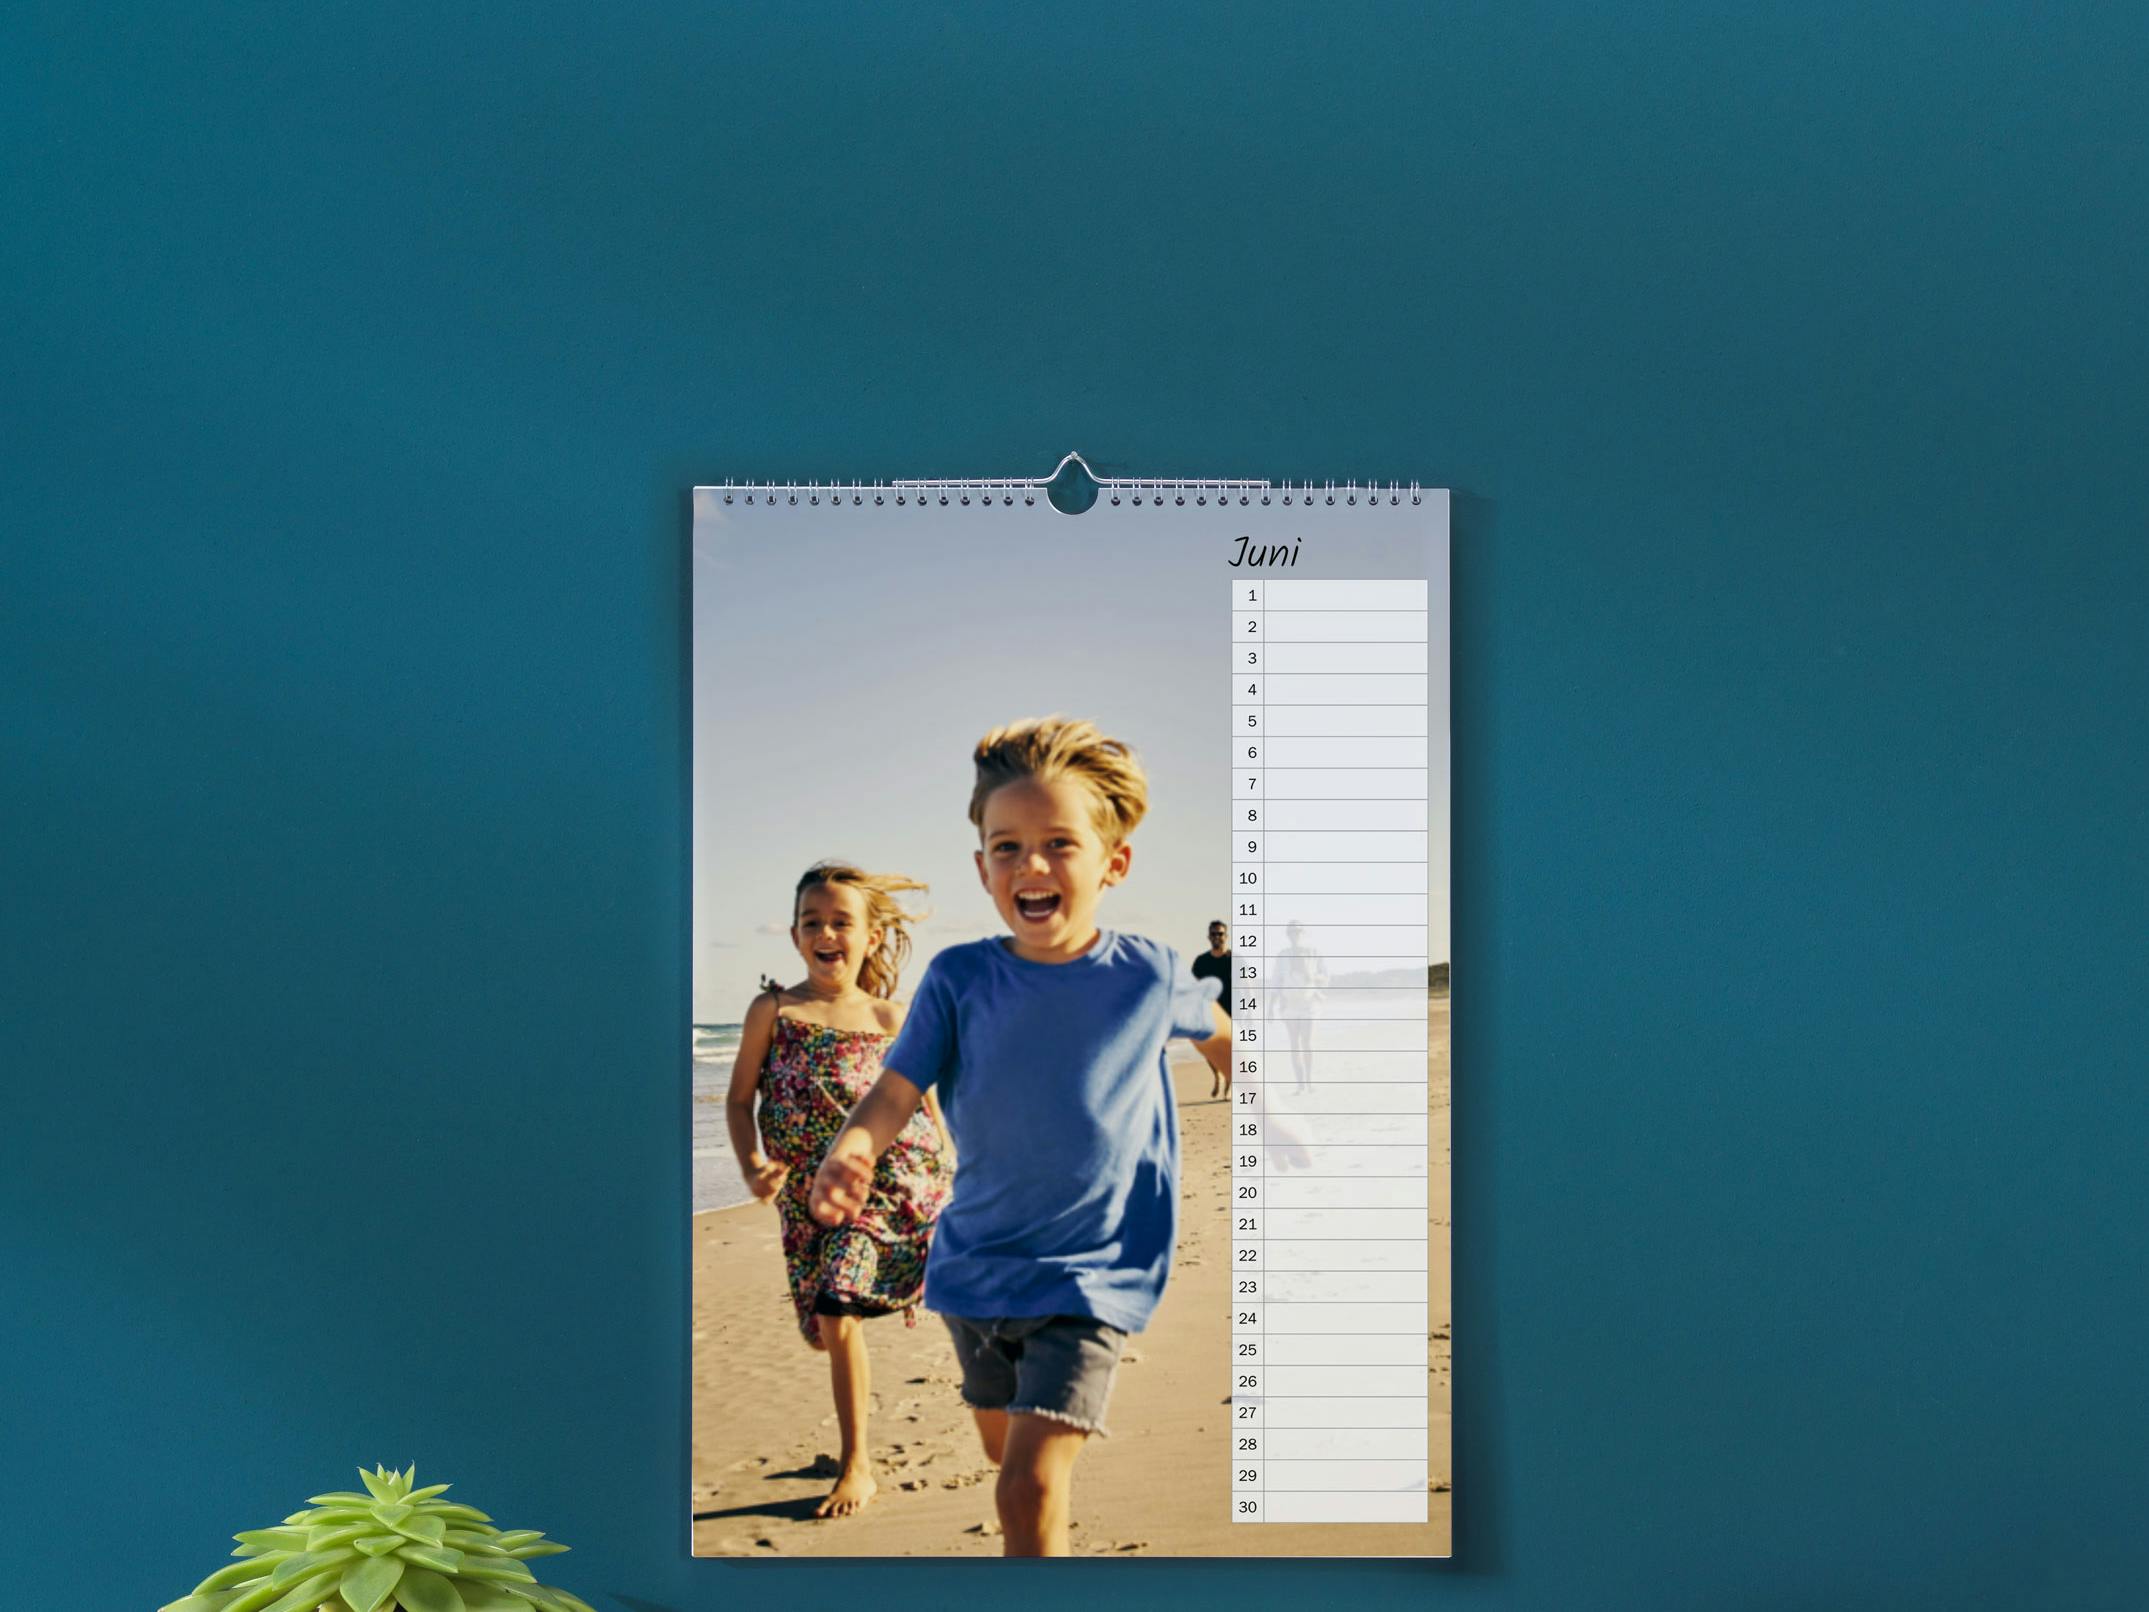 Calendario perpetuo A3 in formato panoramico con foto di un bambino in spiaggia